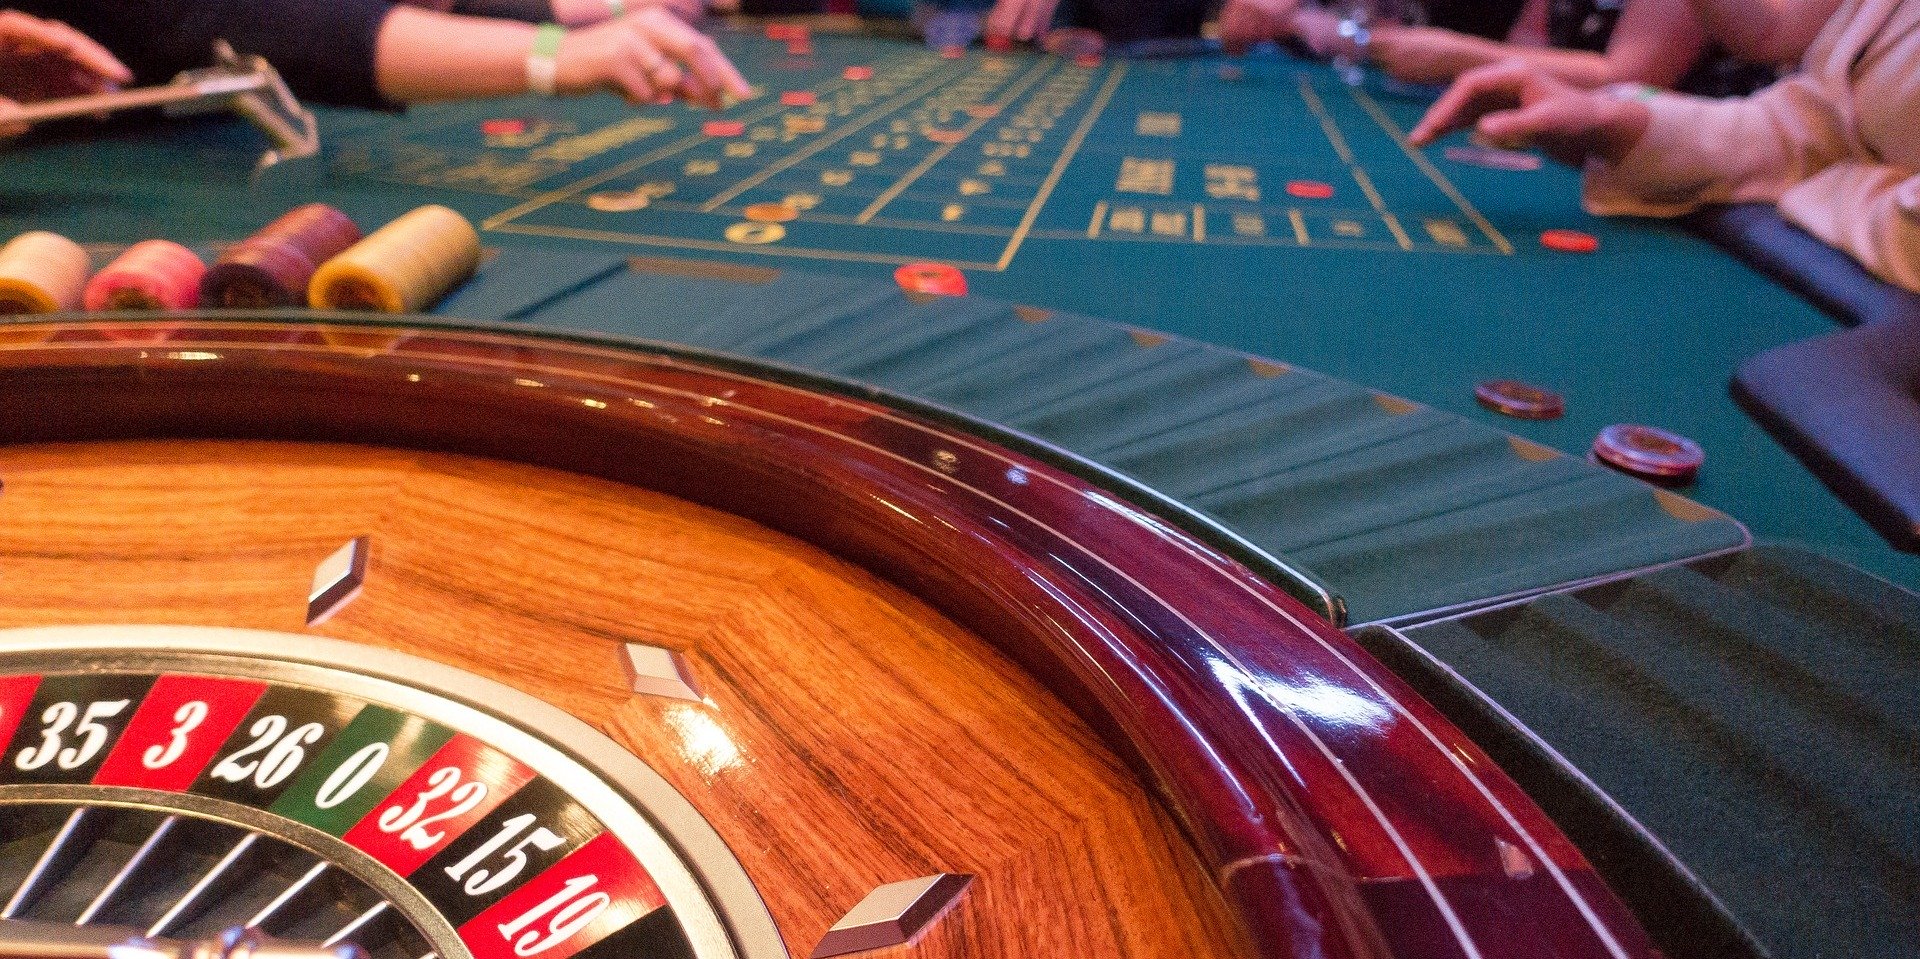 Roulette Tisch in eienm Casino, mehrere Spieler setzen Ihre Chips